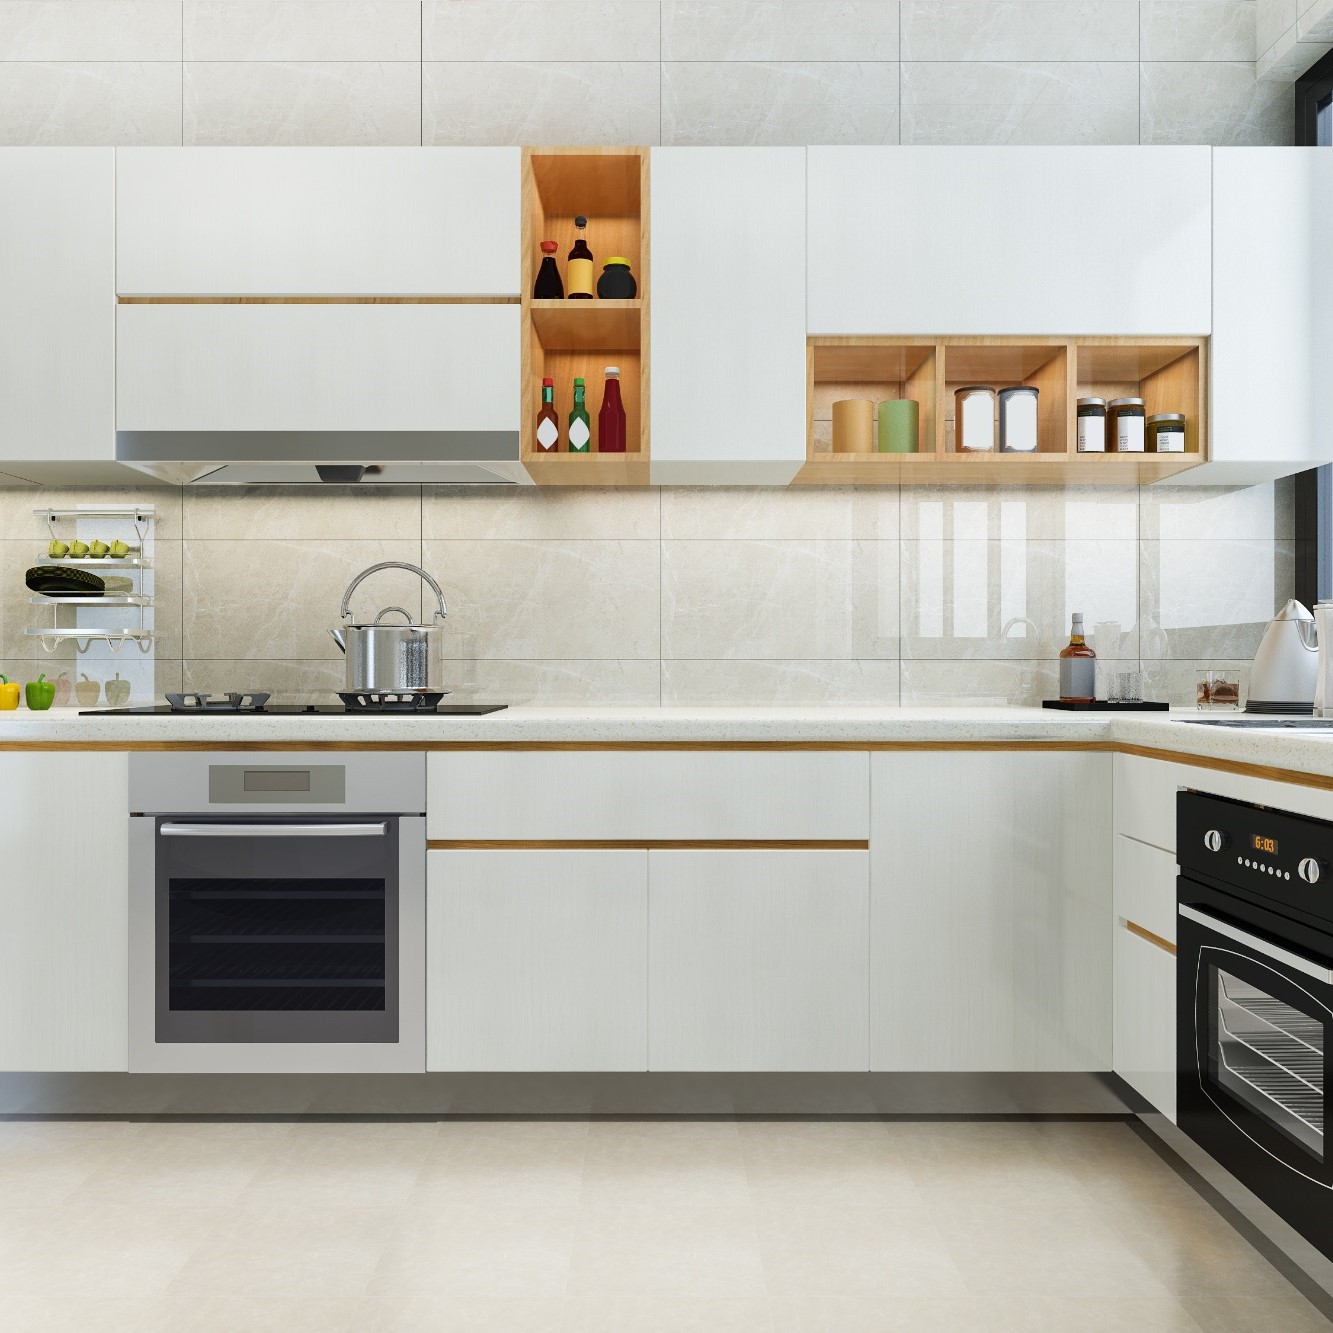 German kitchen designs by Sterling Studio